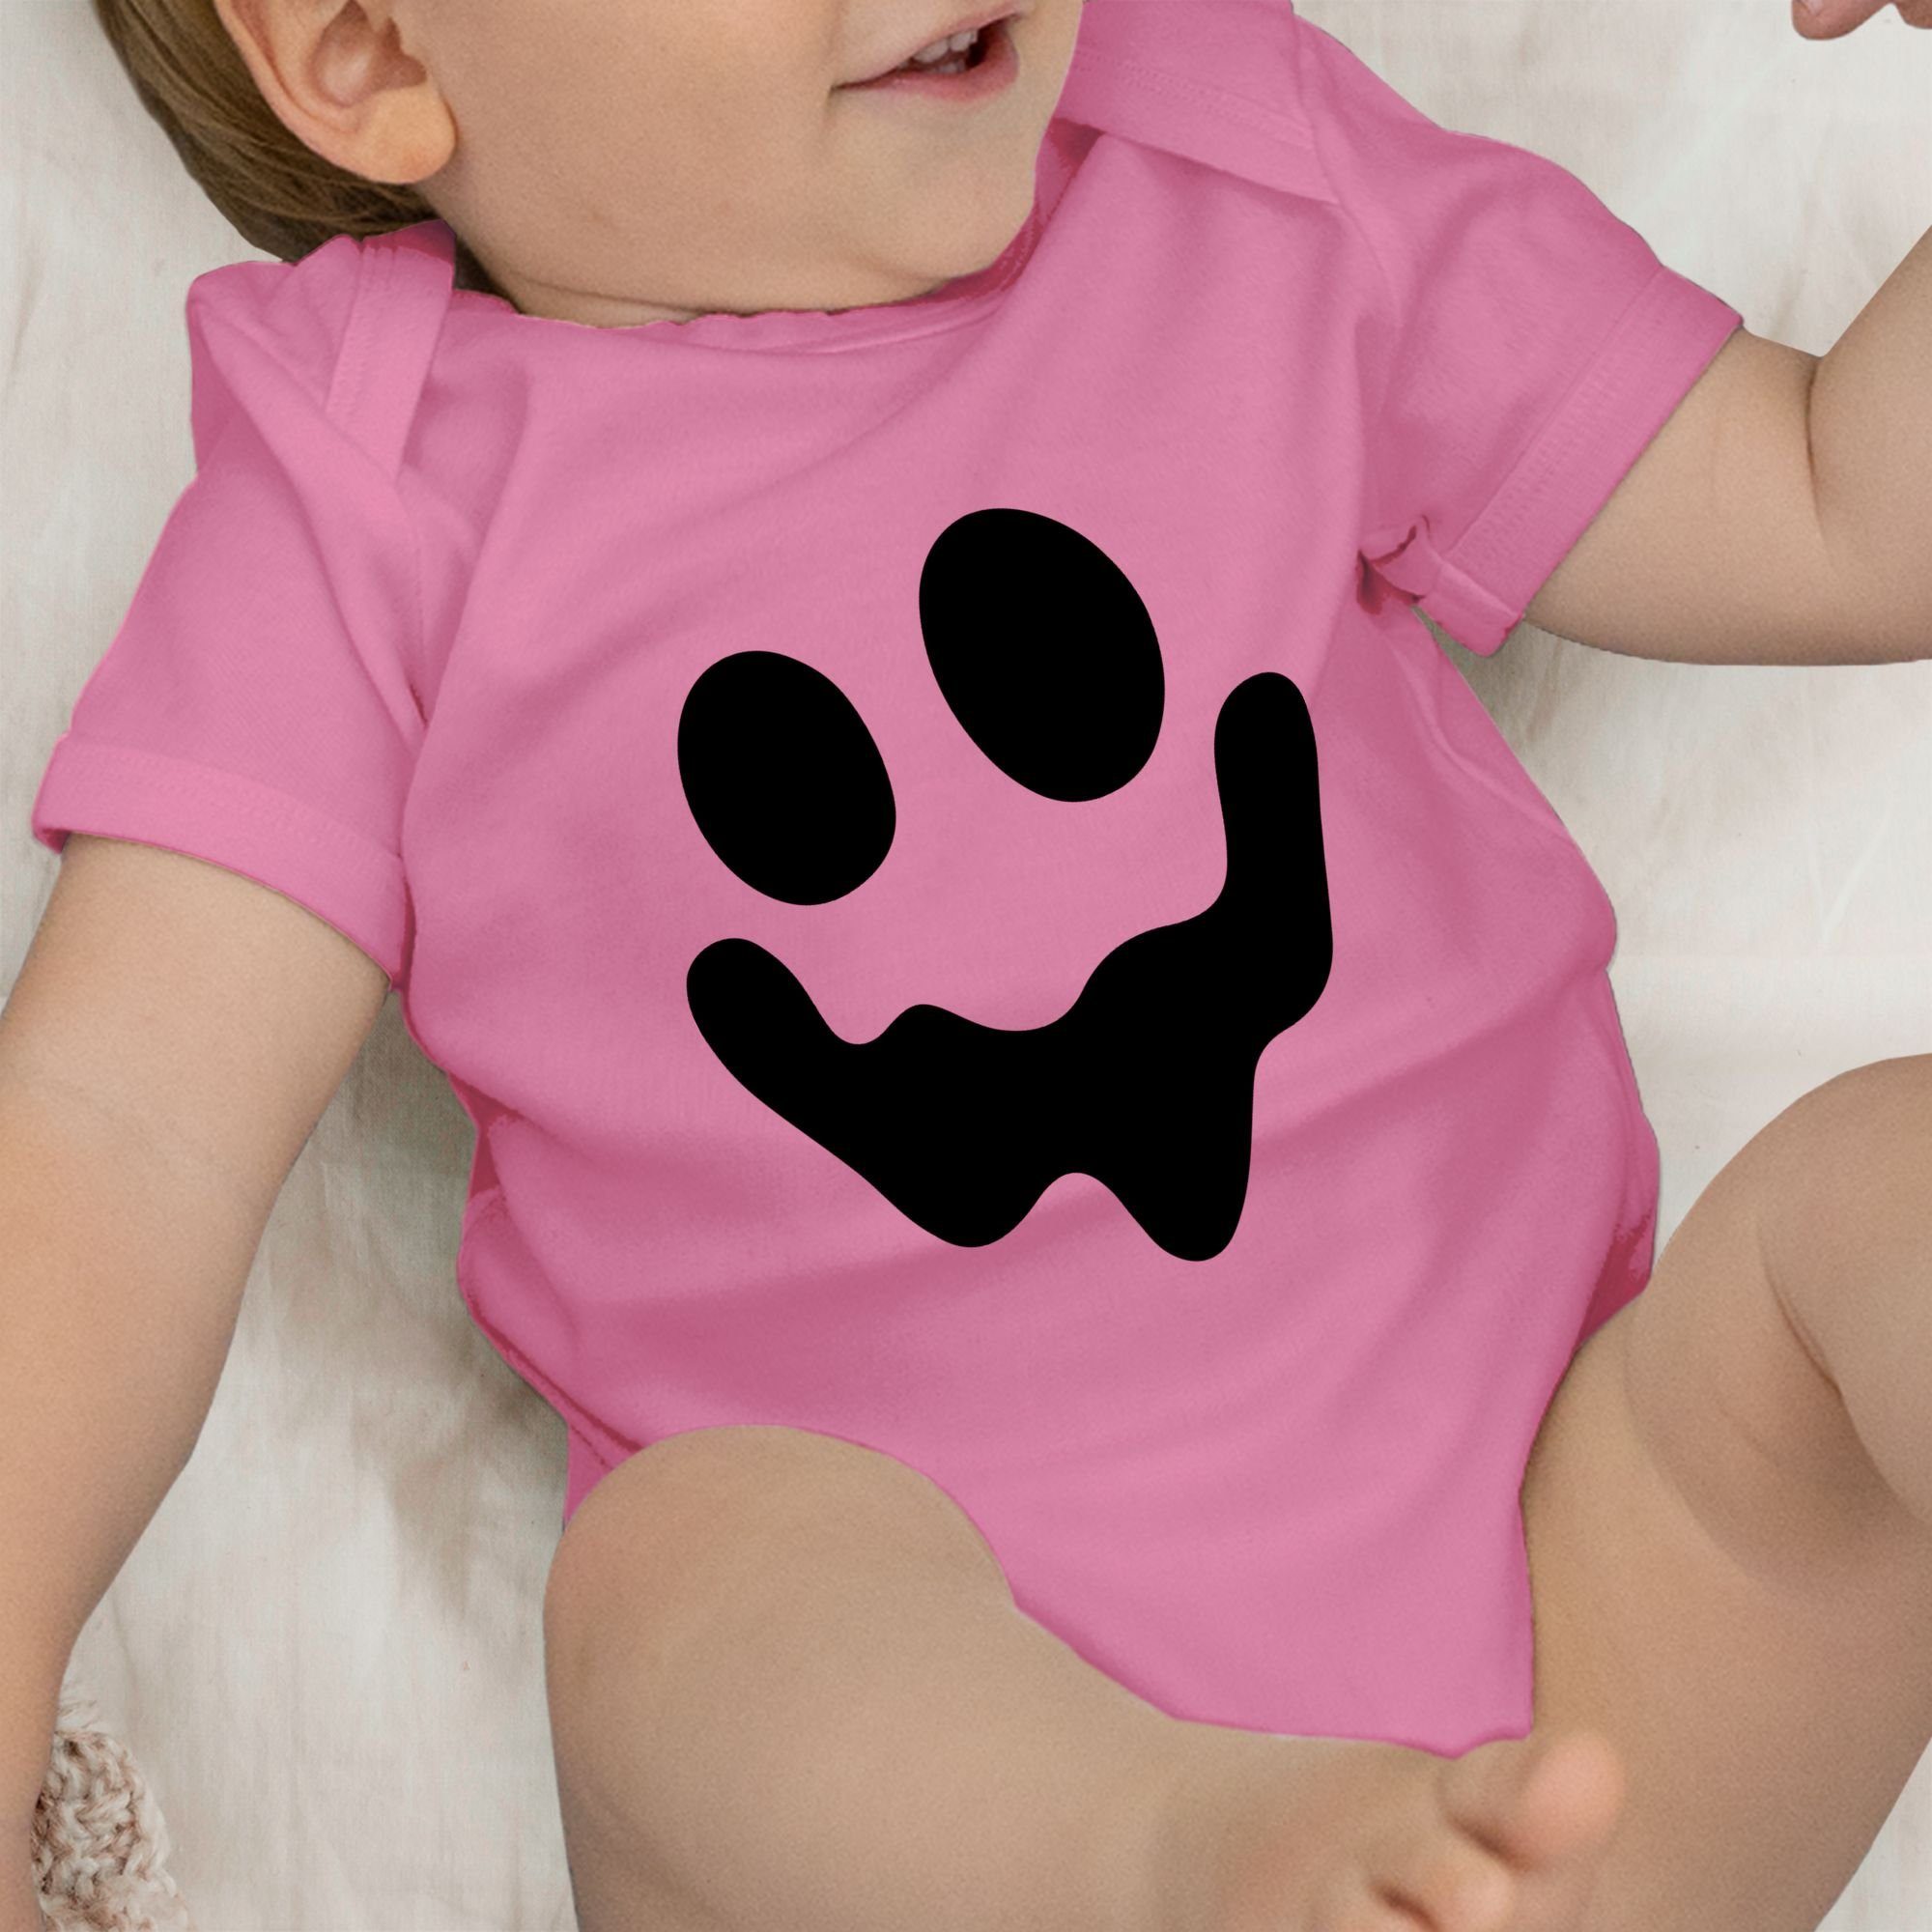 Shirtbody Gespenst Einfach Kostüme Gruselig für Spuk Pink Shirtracer Halloween Baby Geist 2